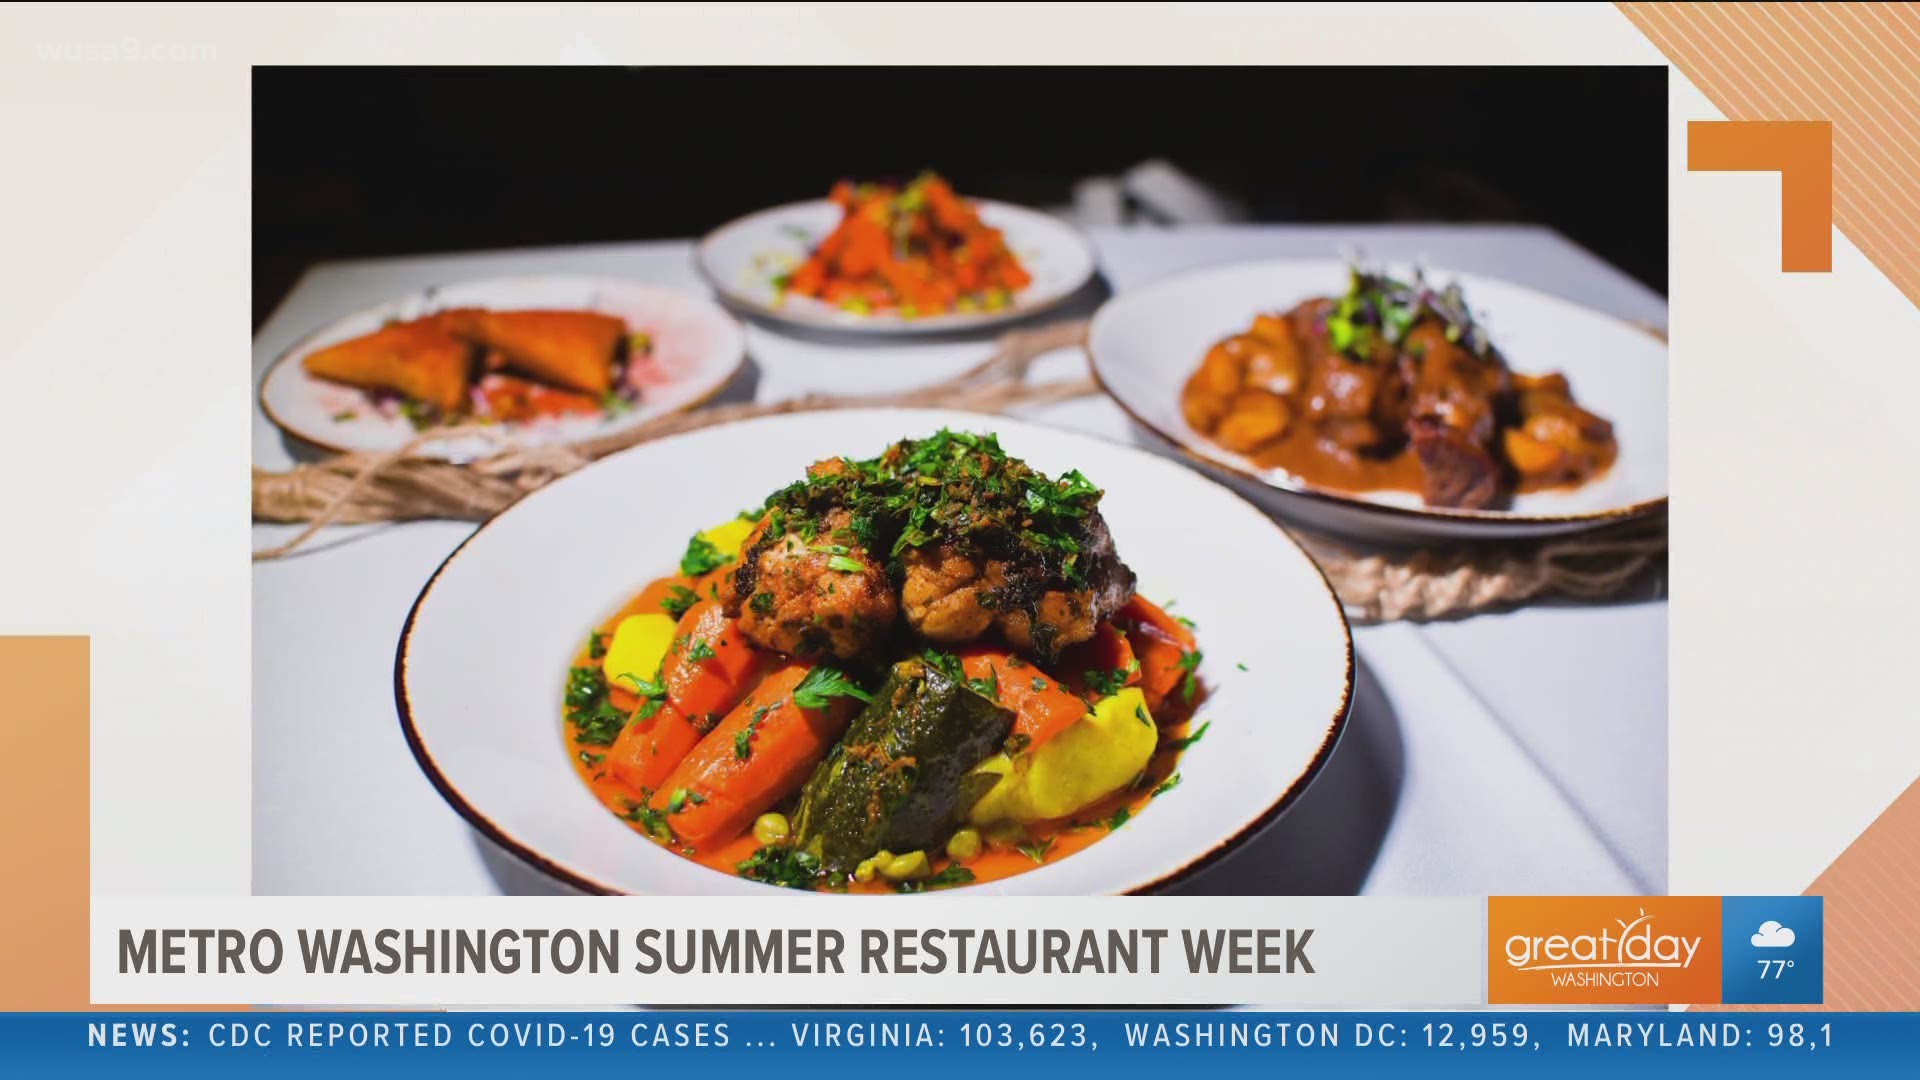 DMV Summer Restaurant Week is August 17 - August 30. President of RAMW, Kathy Hollinger explains.